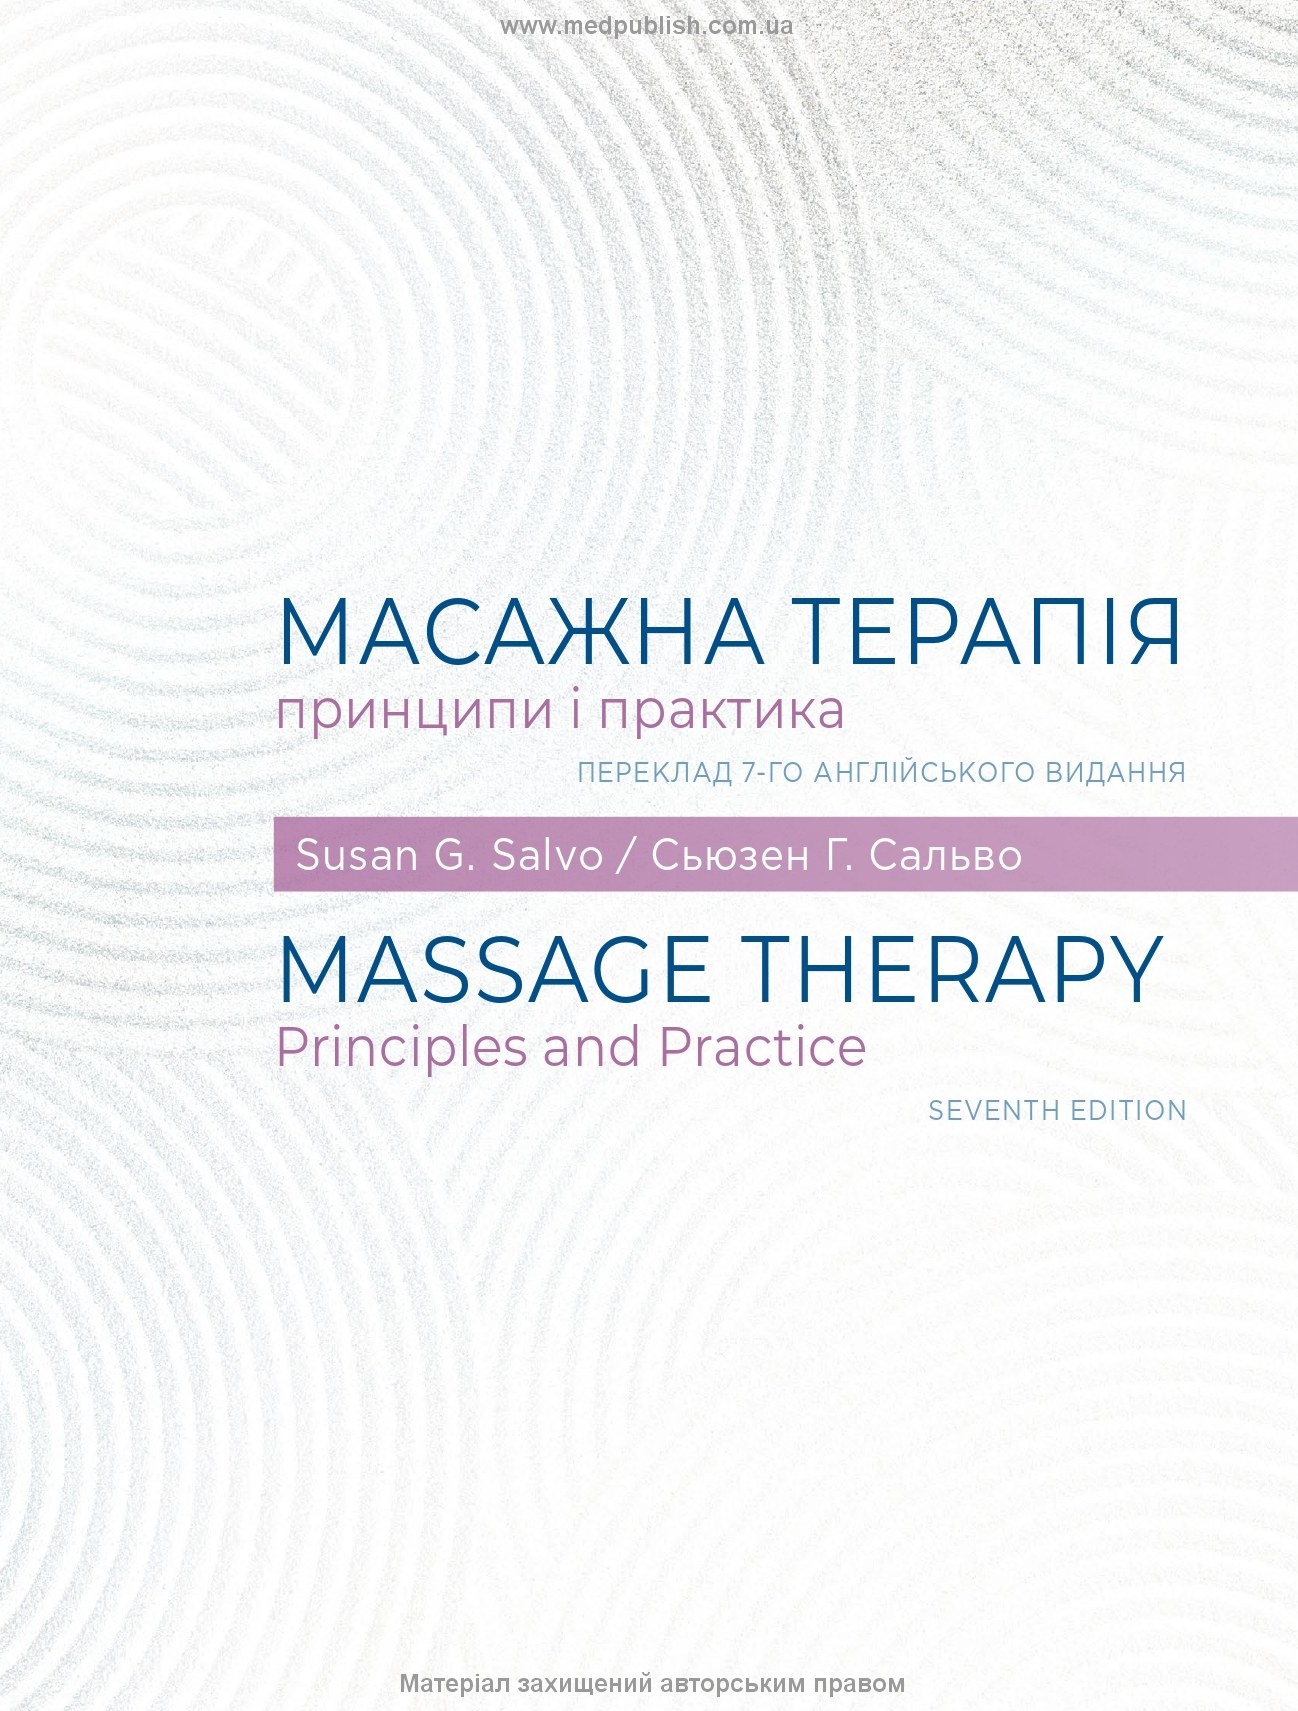 Масажна терапія: принципи і практика: 7-е видання. Автор — Сьюзен Г. Сальво — доктор педагогічних наук, фахівець із лікувального масажу. 